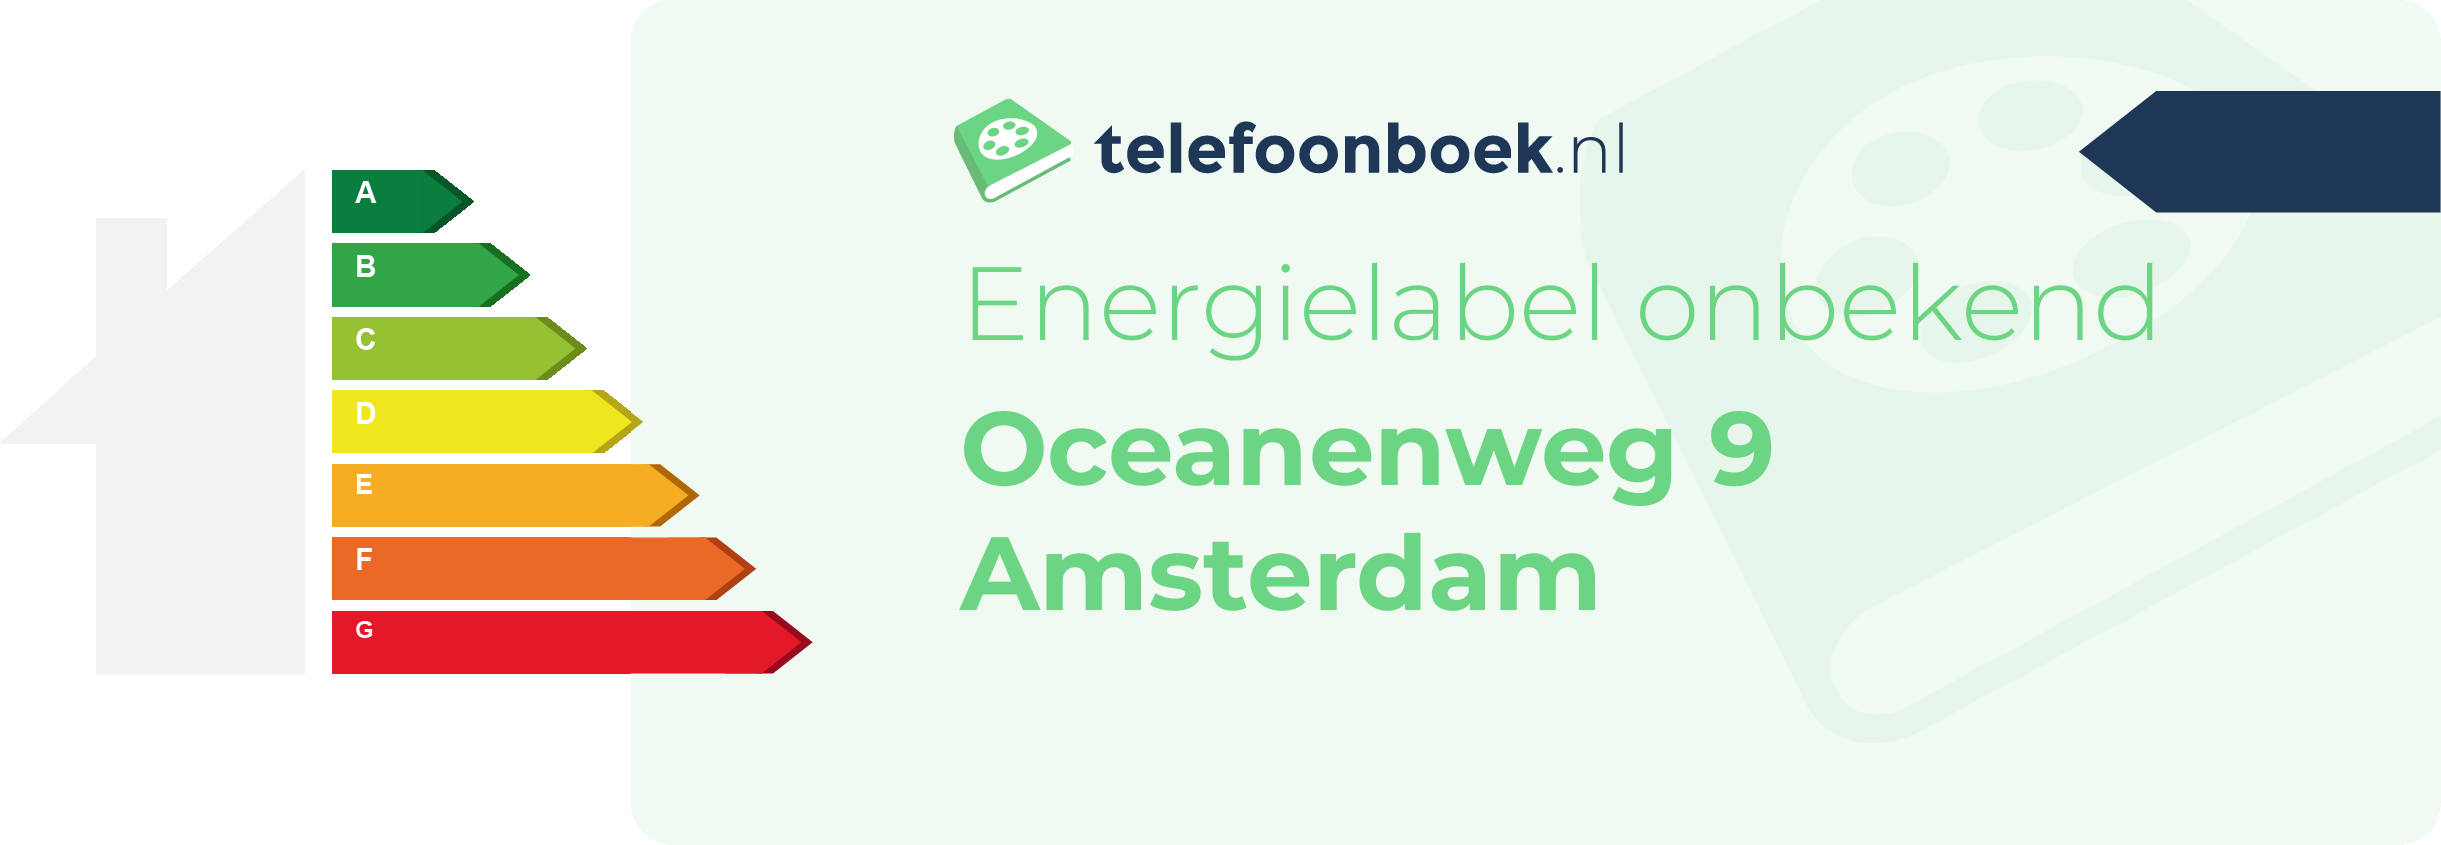 Energielabel Oceanenweg 9 Amsterdam